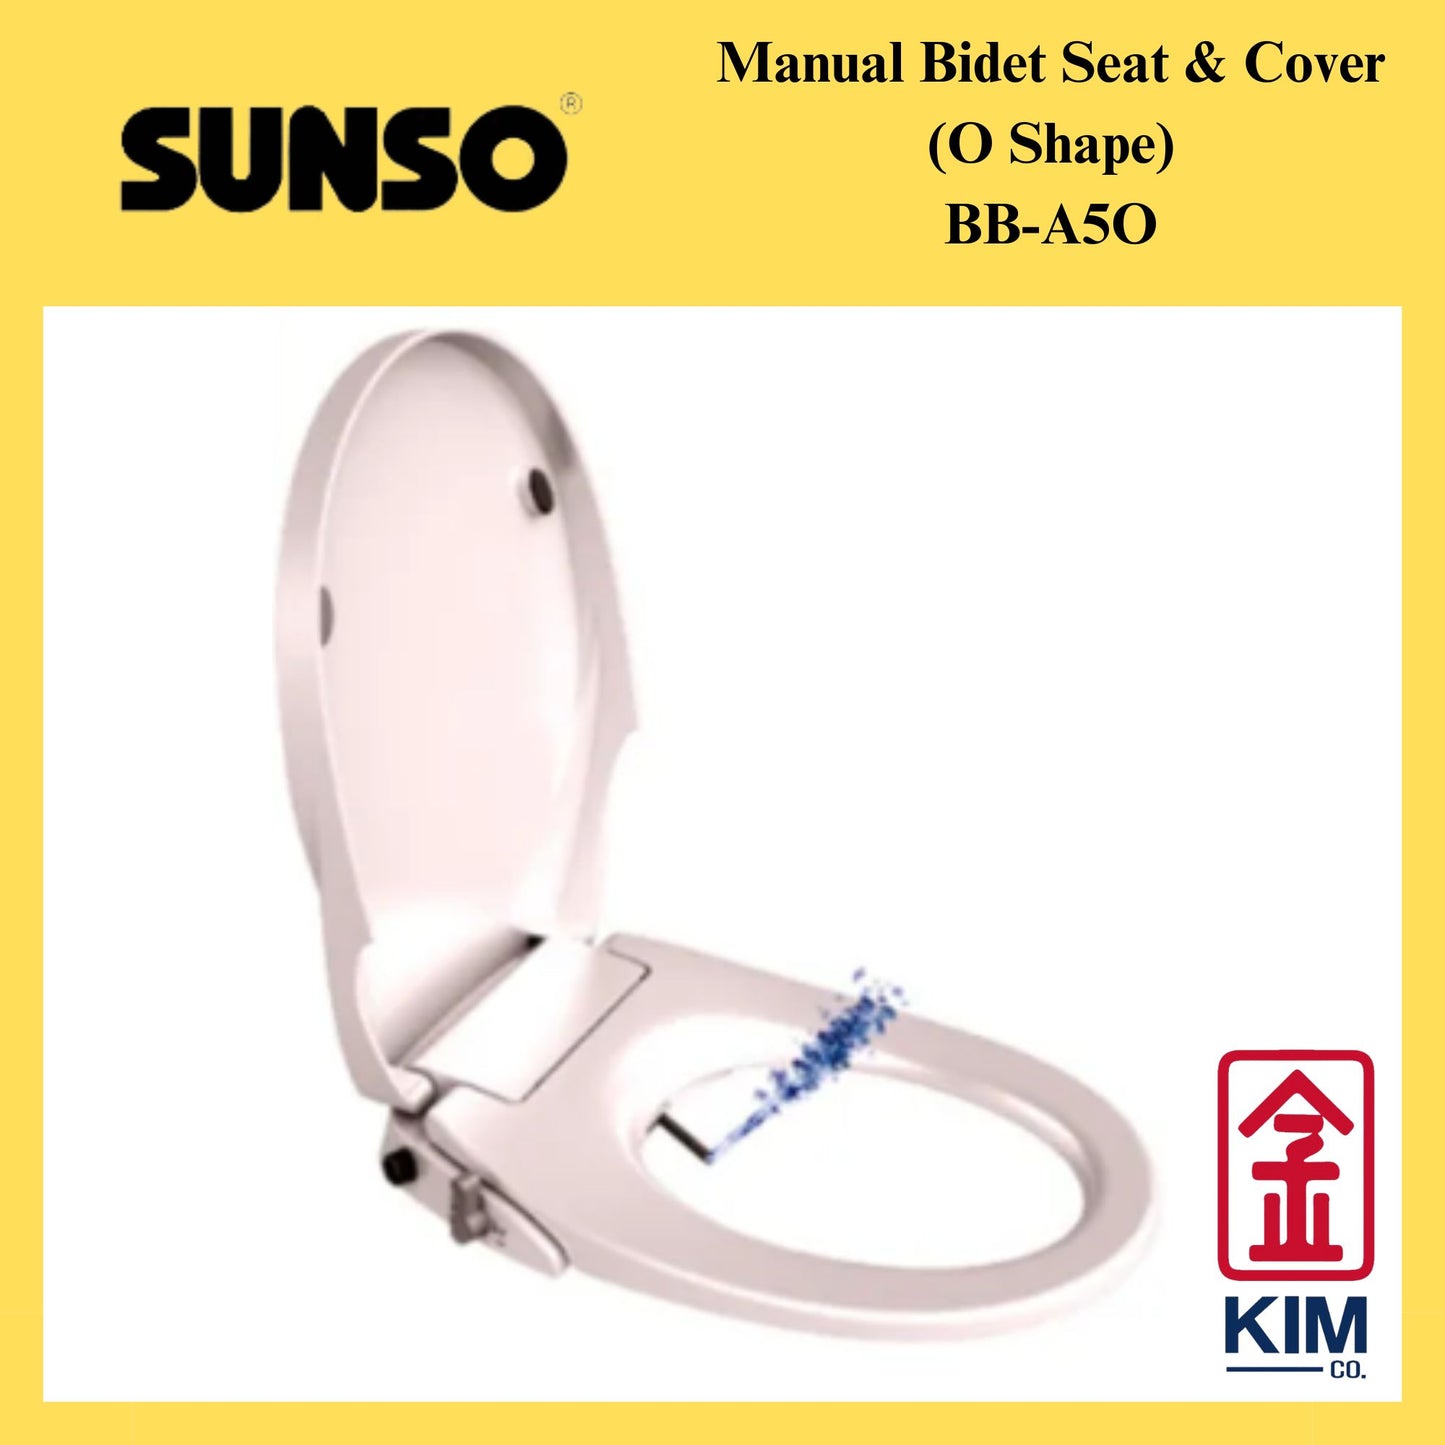 Sunso Manual Bidet Seat & Cover O Shape (BB-A5O)